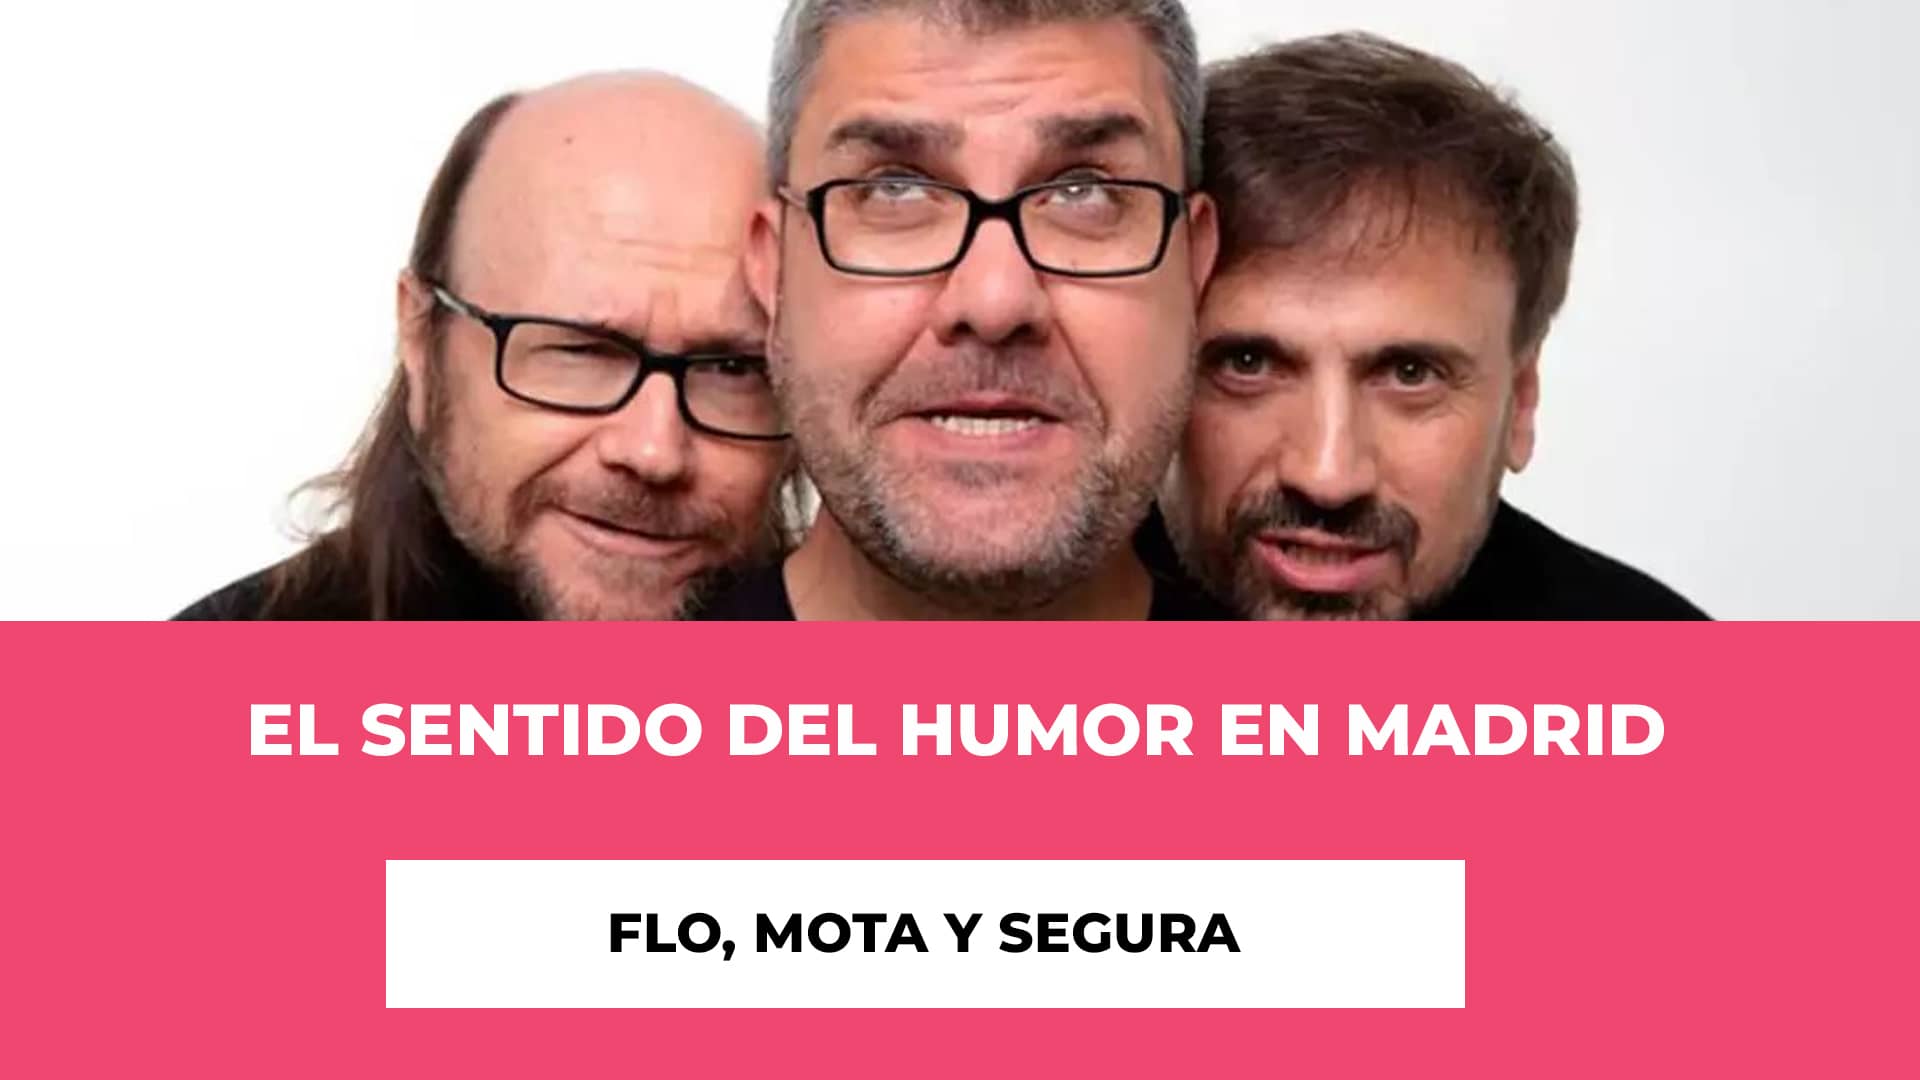 Flo Mota y Segura: El sentido del humor en Madrid - Recinto - Fechas - Horario - Precios de las entradas - Risas aseguradas